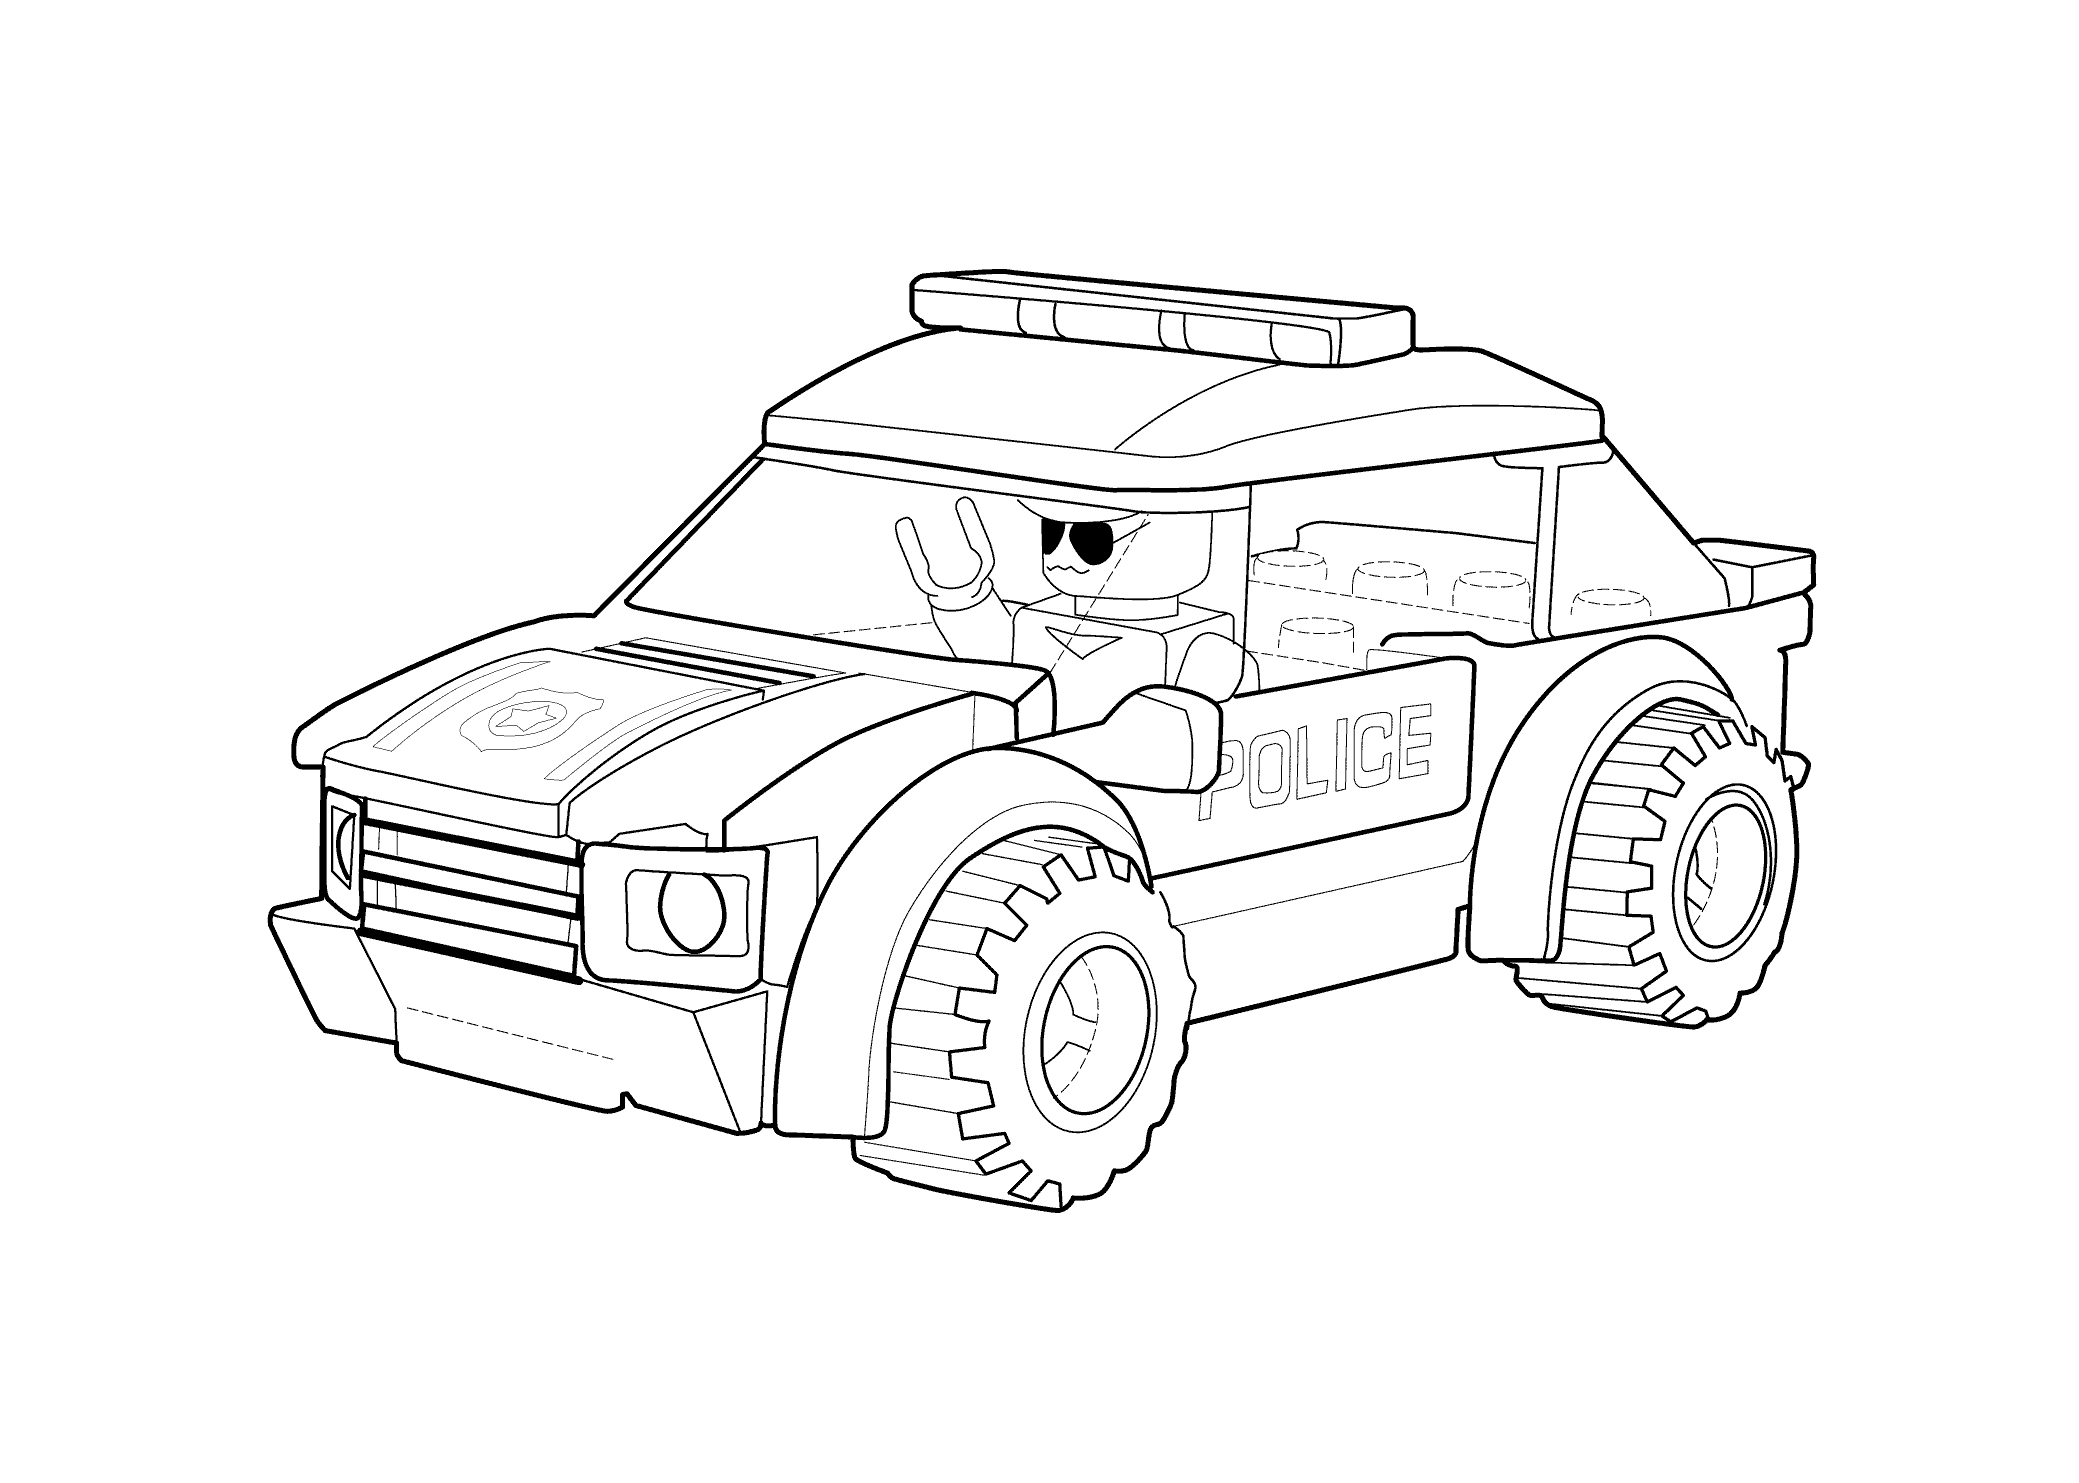 LEGO Police Car